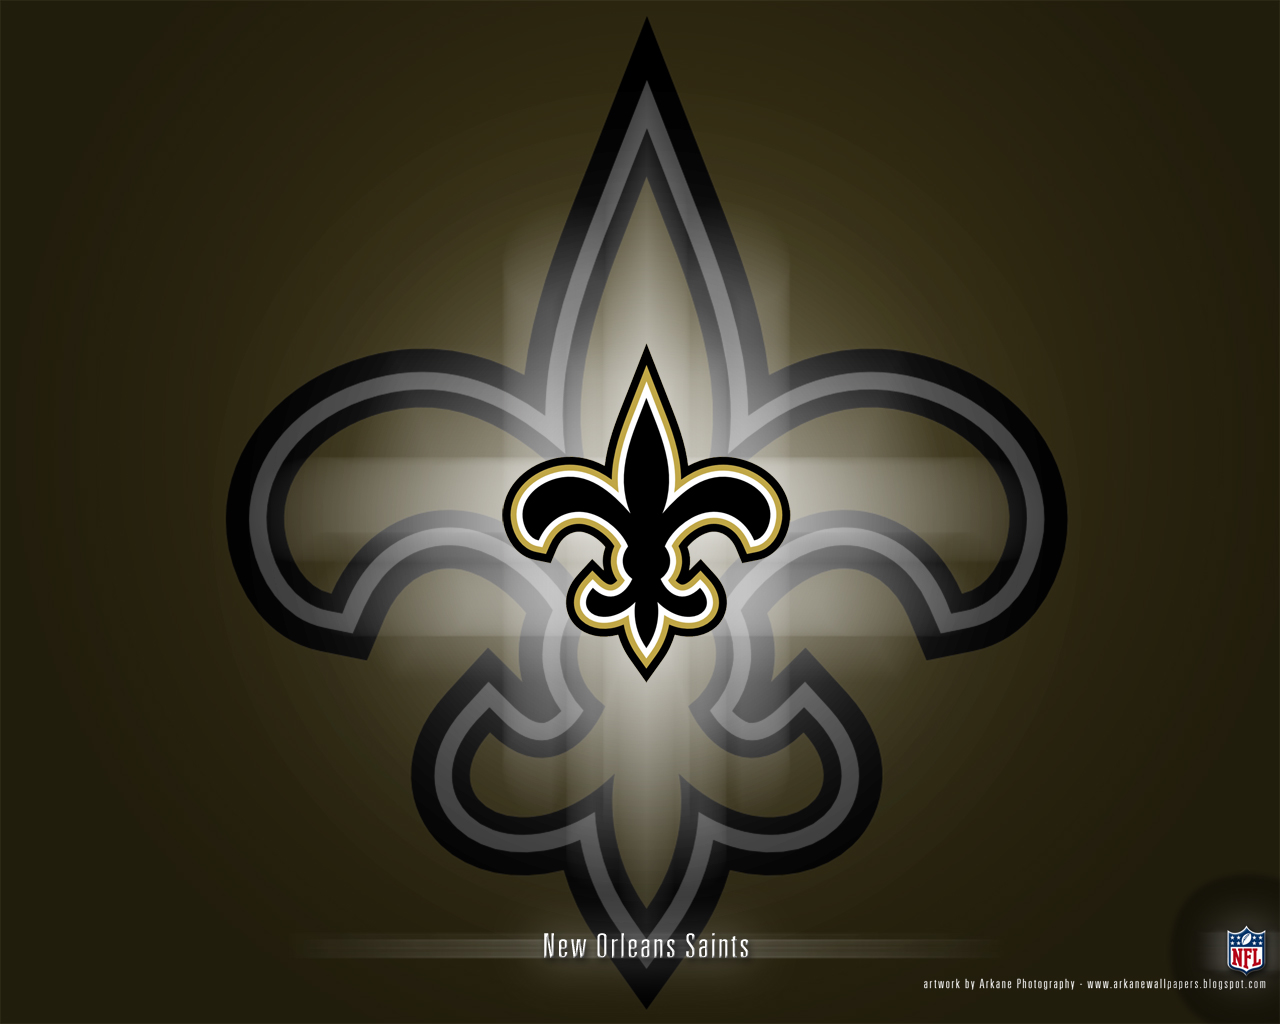 New Orleans Saints Vol